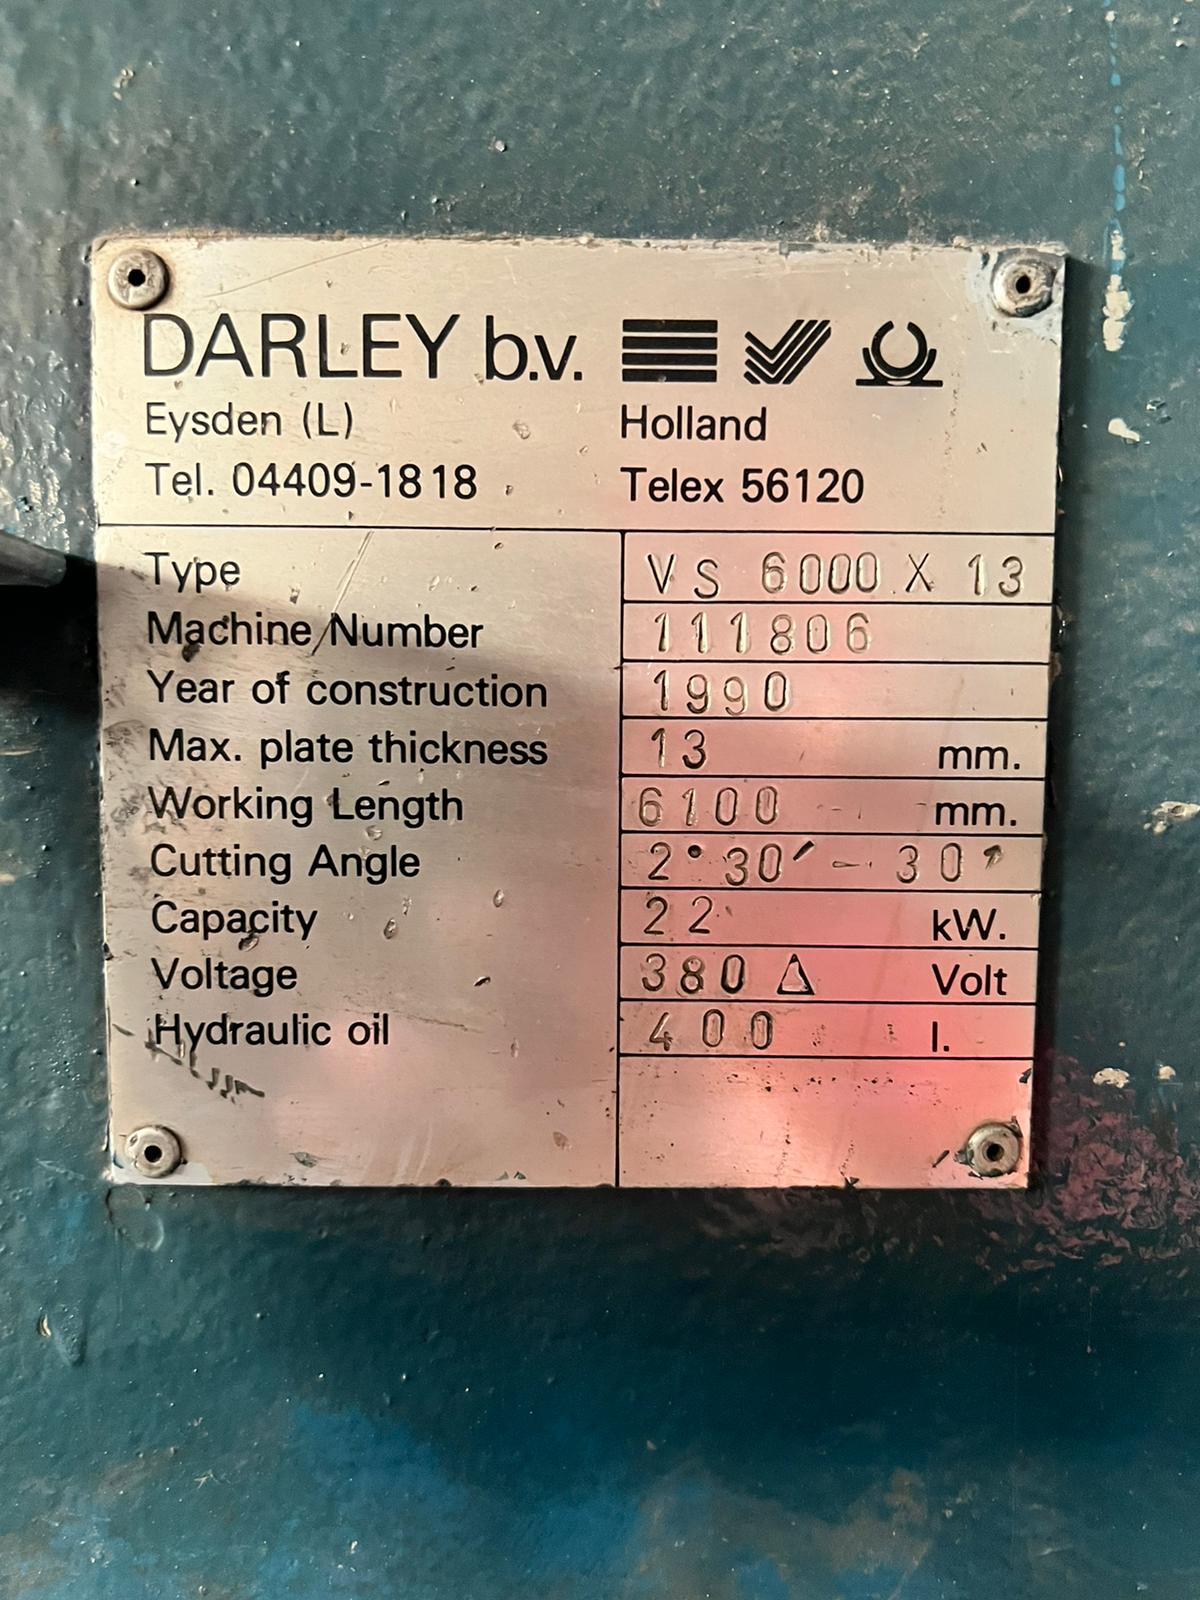 5666-darley 13 x 6000 1990.04